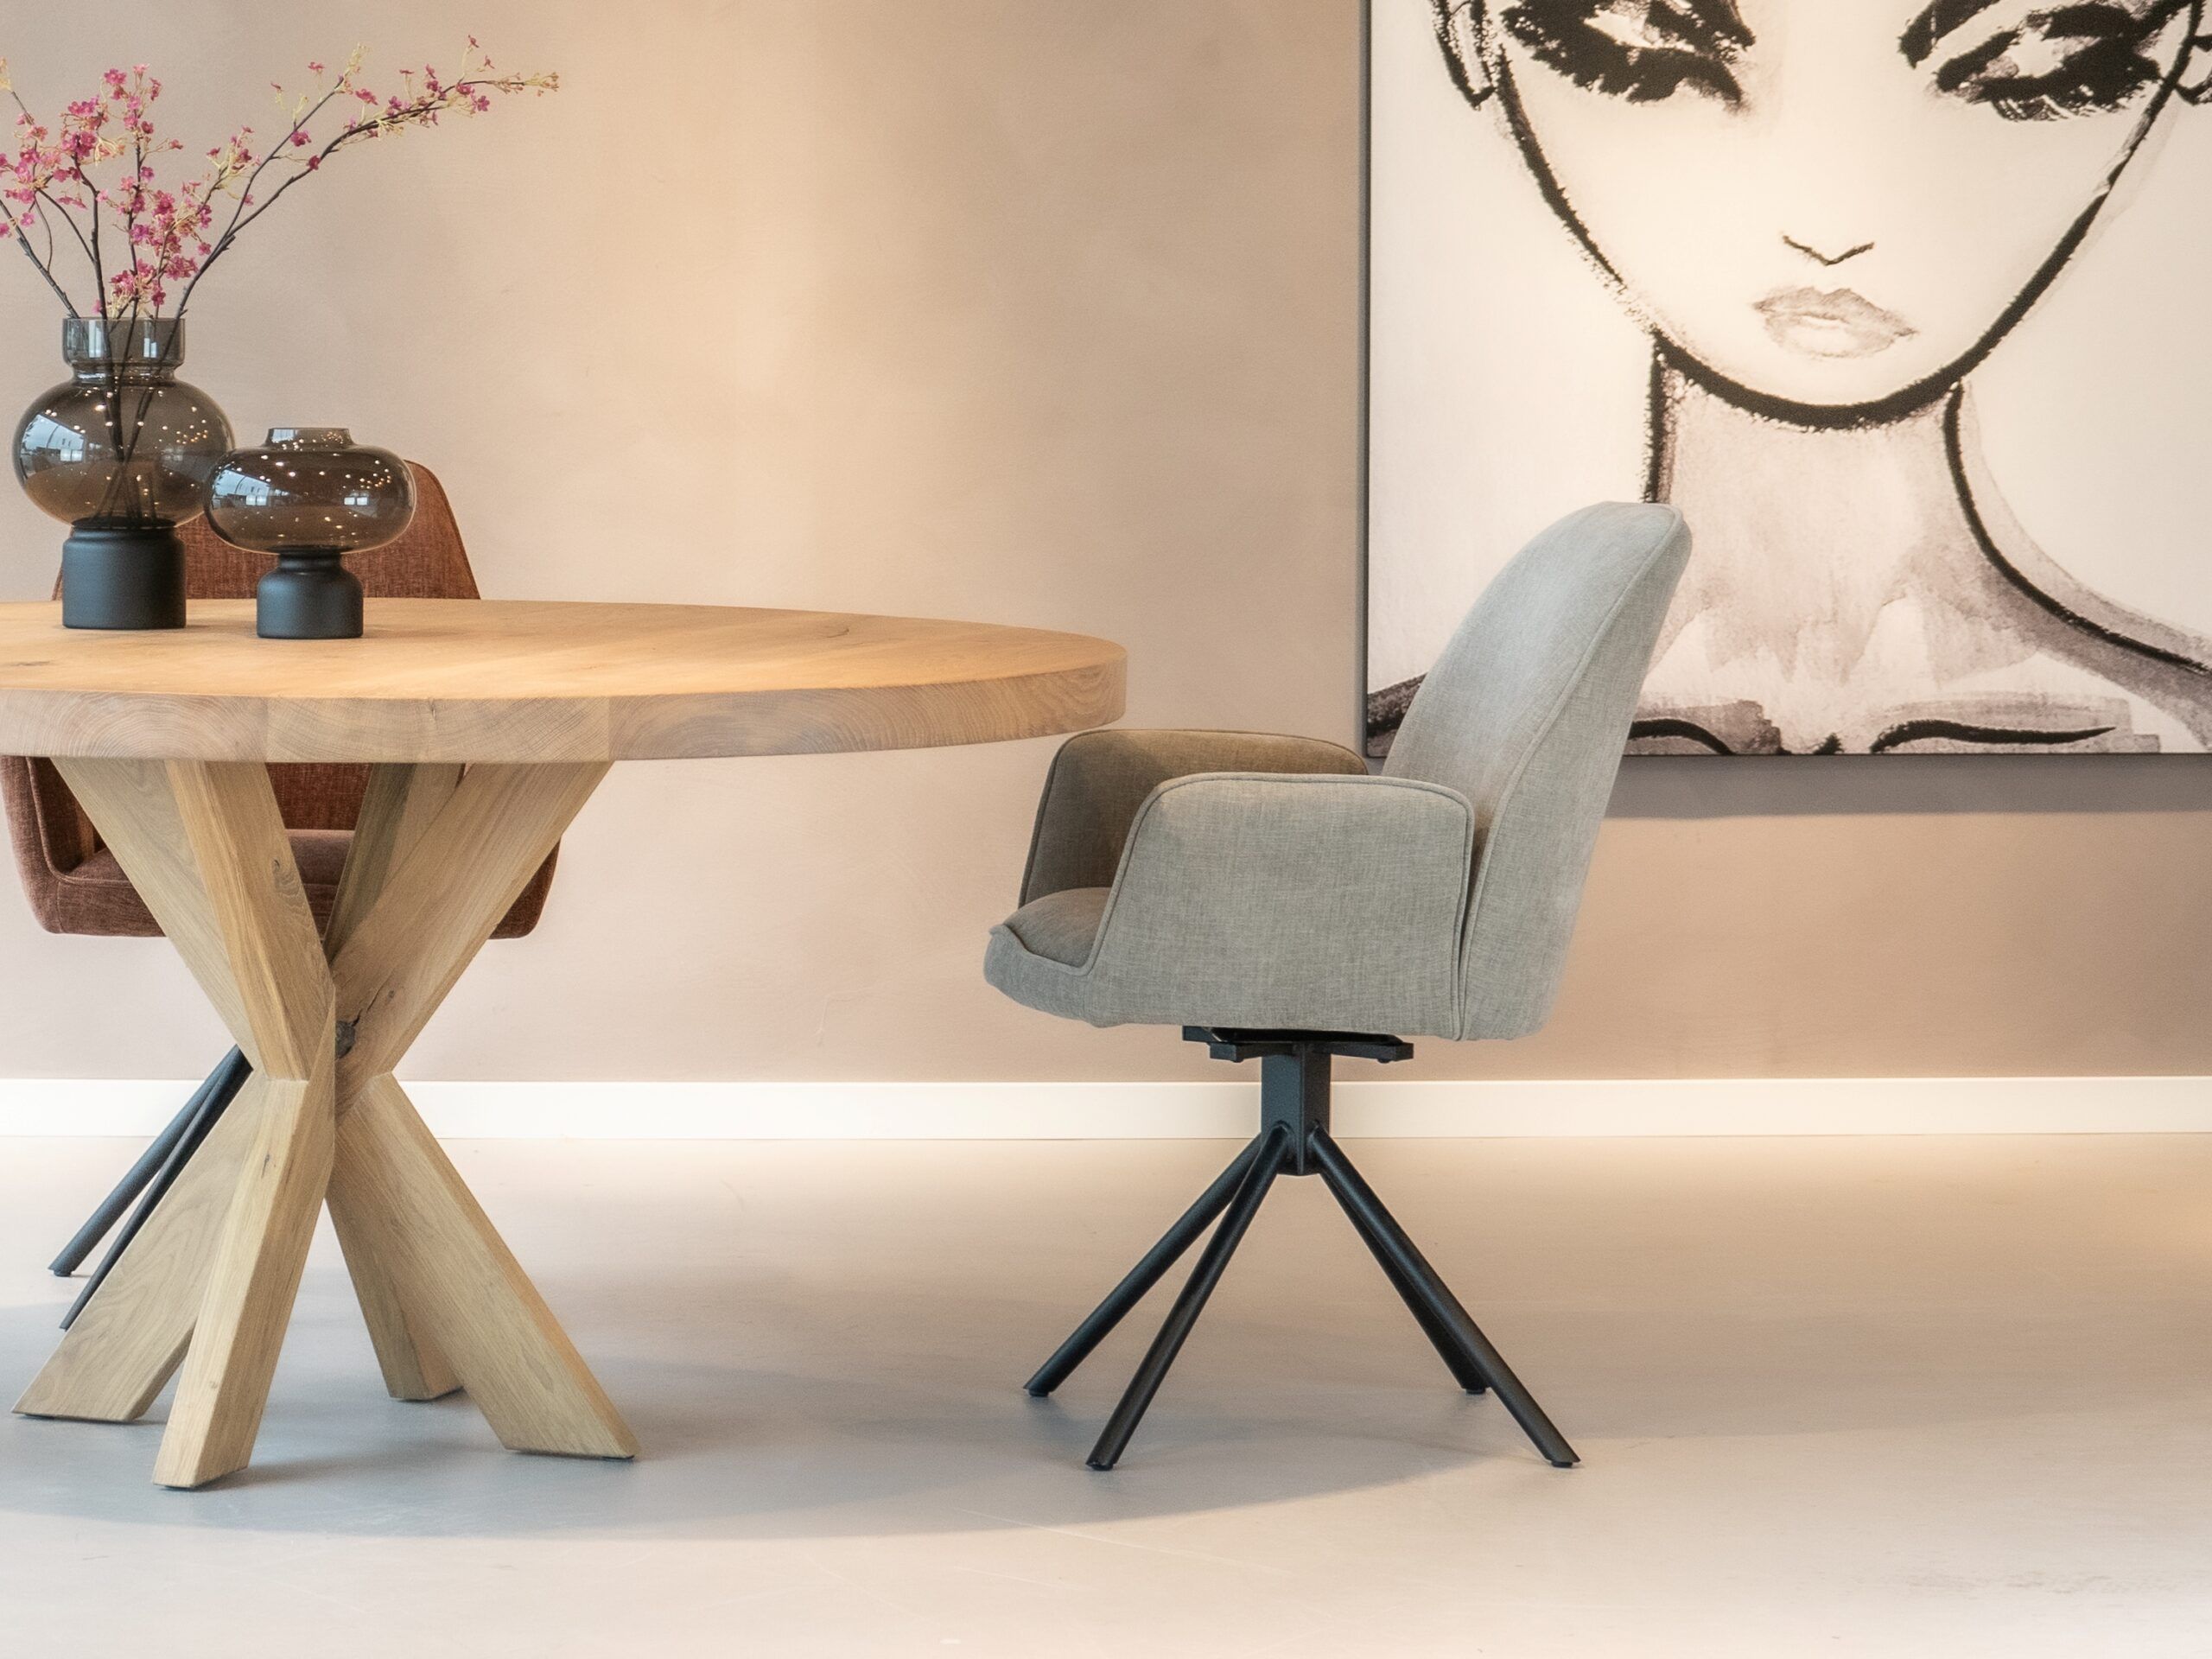 Stijlvolle beige-grijze Stino eetkamerstoel met een eigentijds ontwerp.